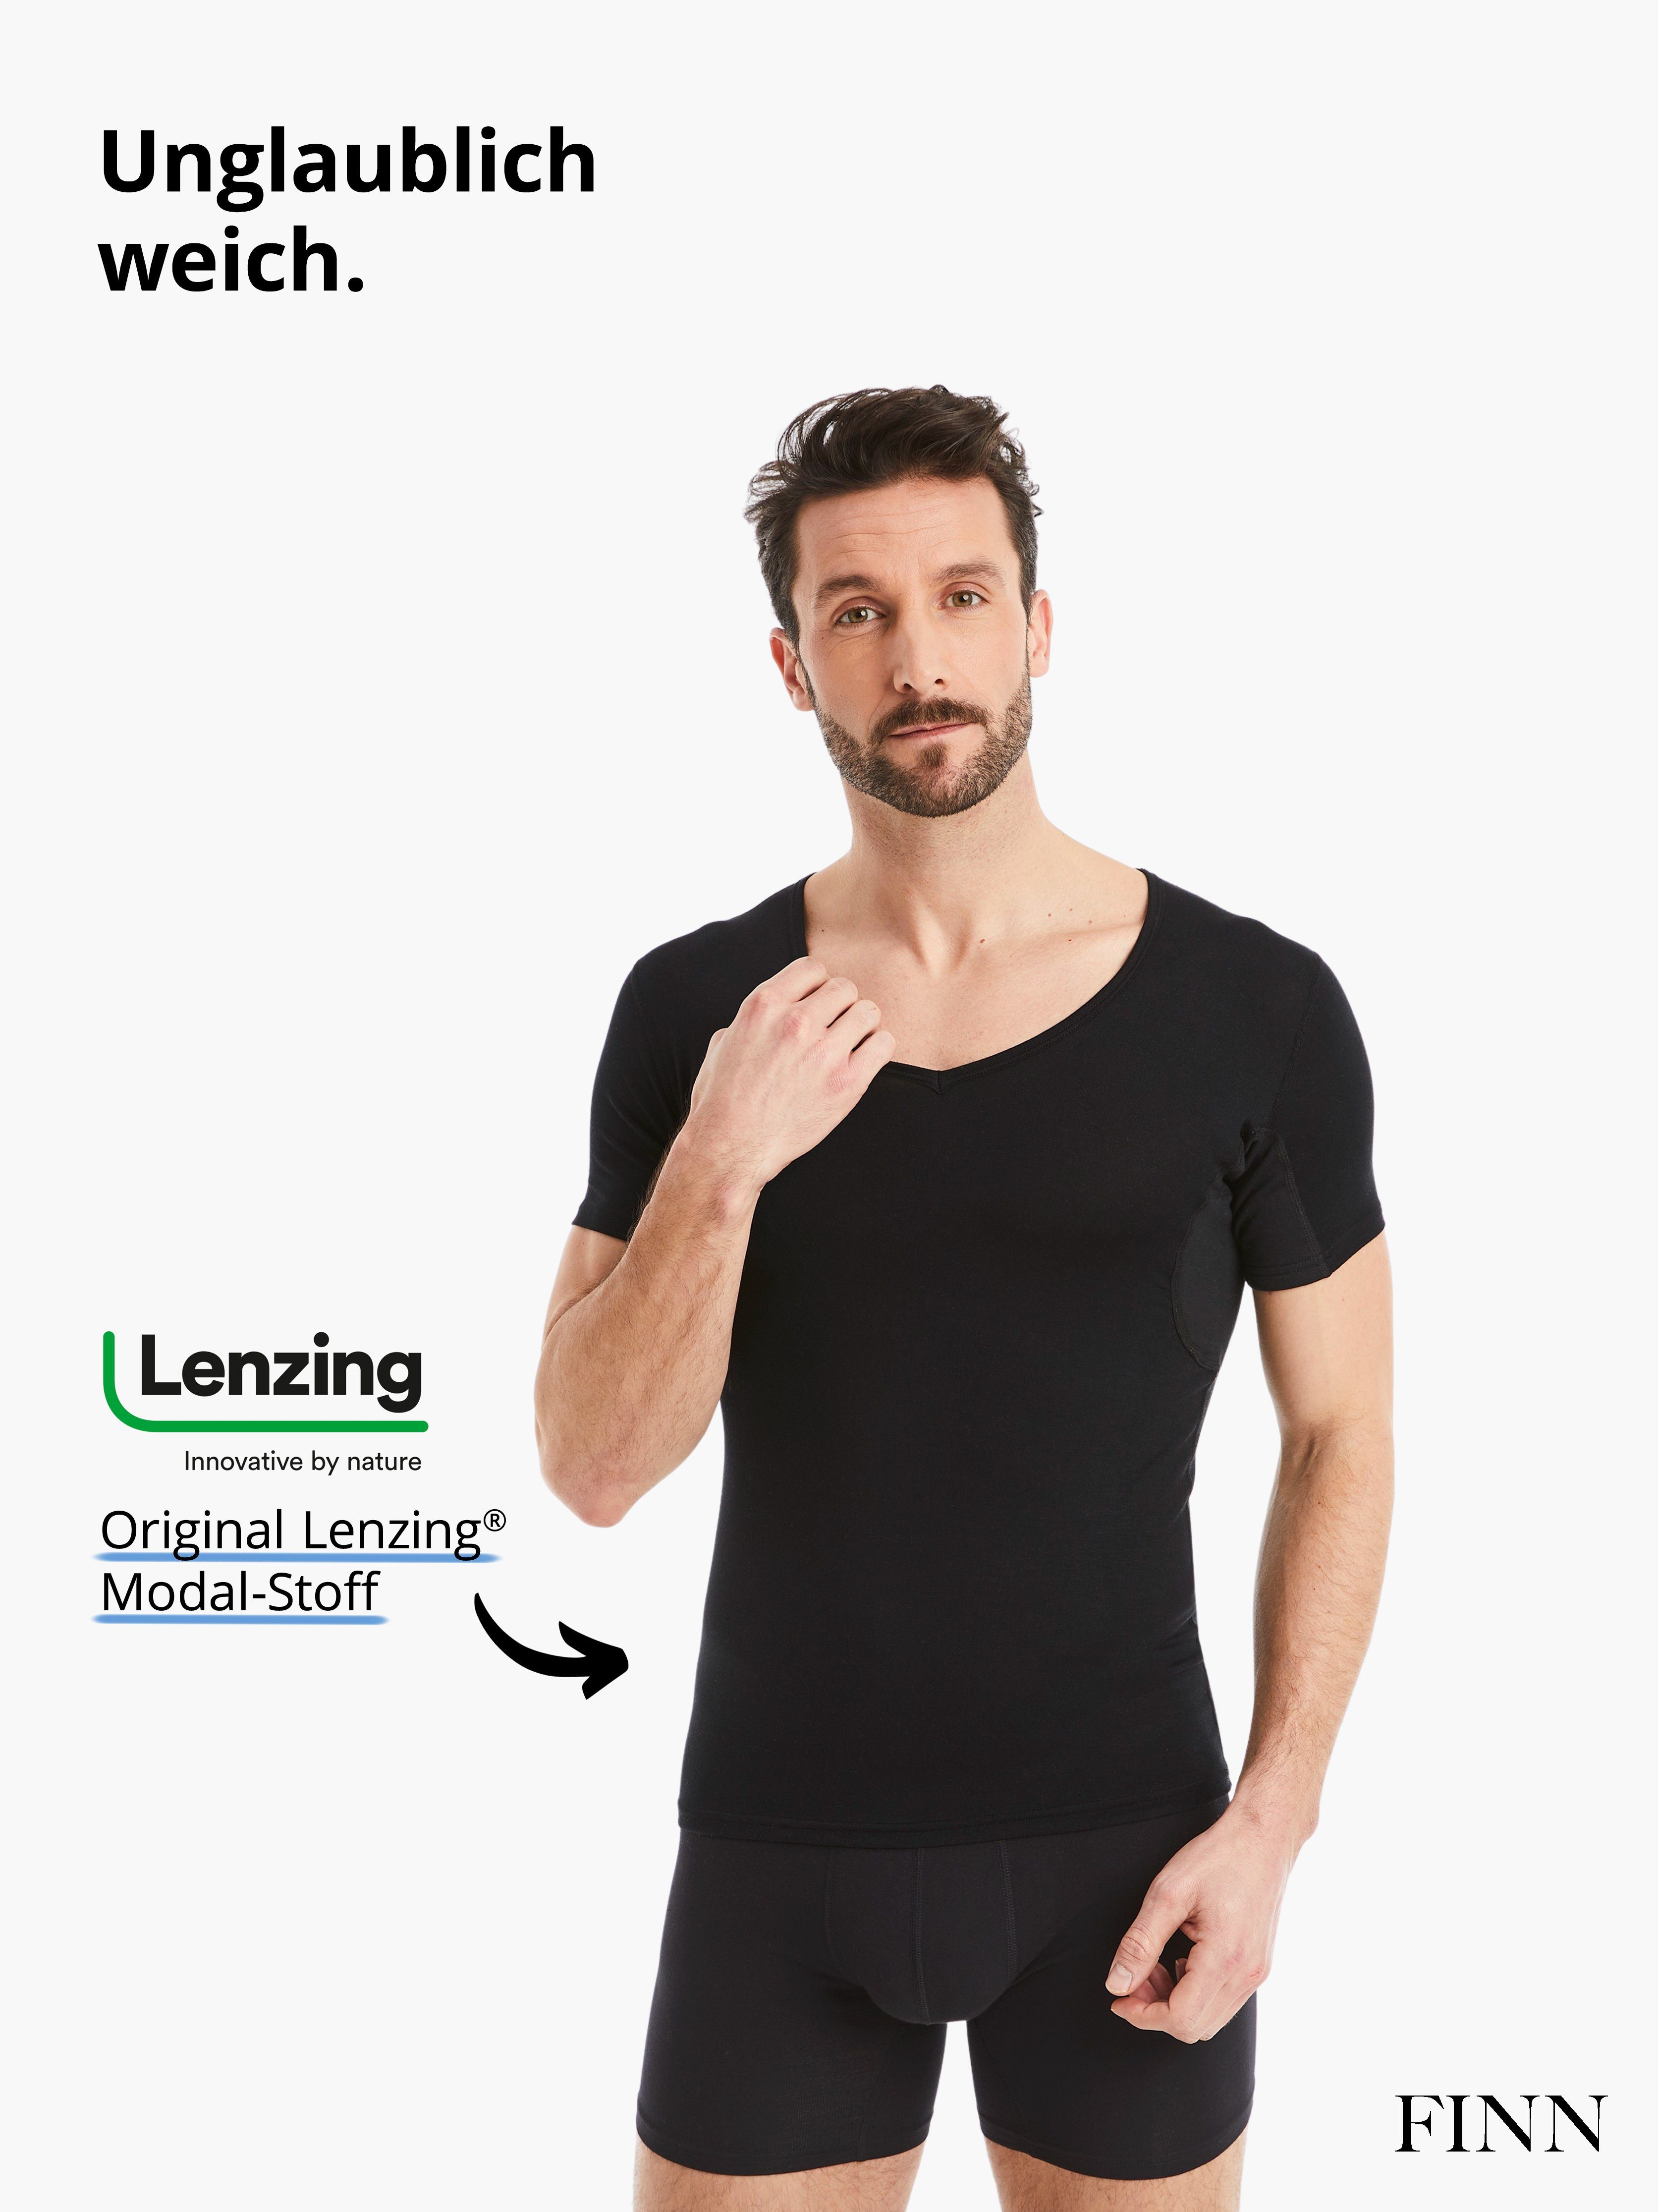 vor Schweißflecken, garantierte Wirkung 100% Anti-Schweiß Design Unterhemd Schwarz Unterhemd Schutz FINN Herren